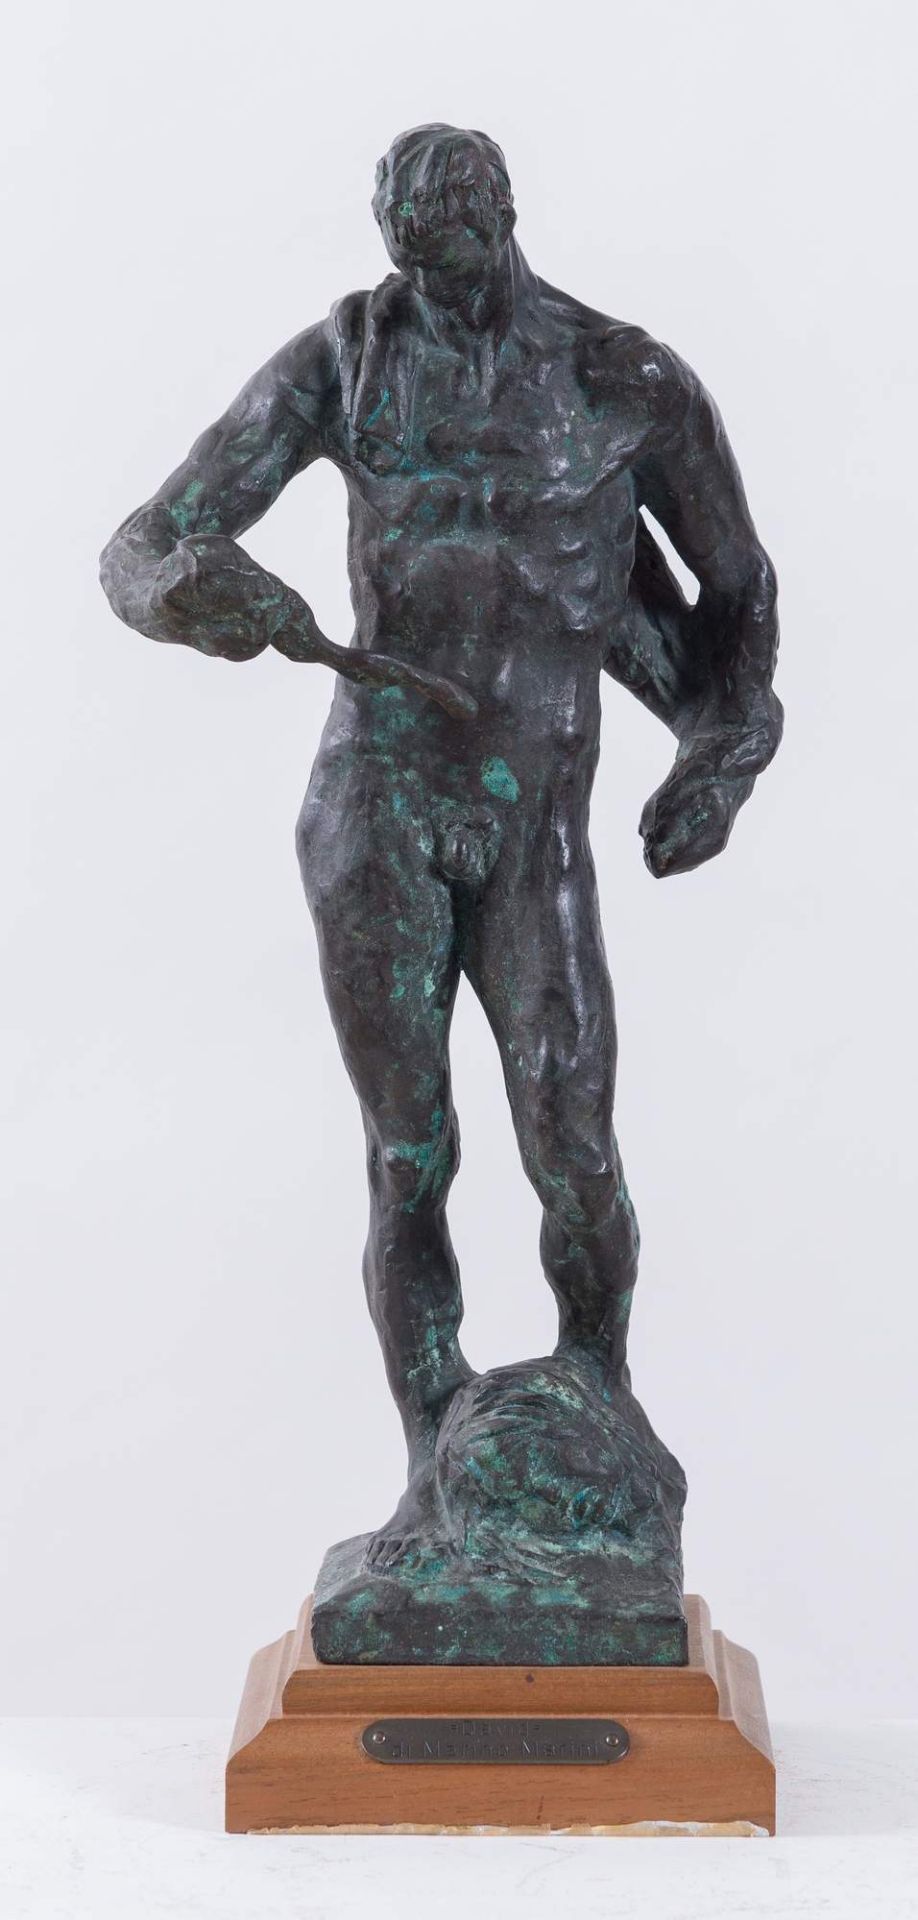 MARINO MARINI (Pistoia 1901 – Viareggio 1980), attr. "David". Scultura in bronzo. Cm (senza